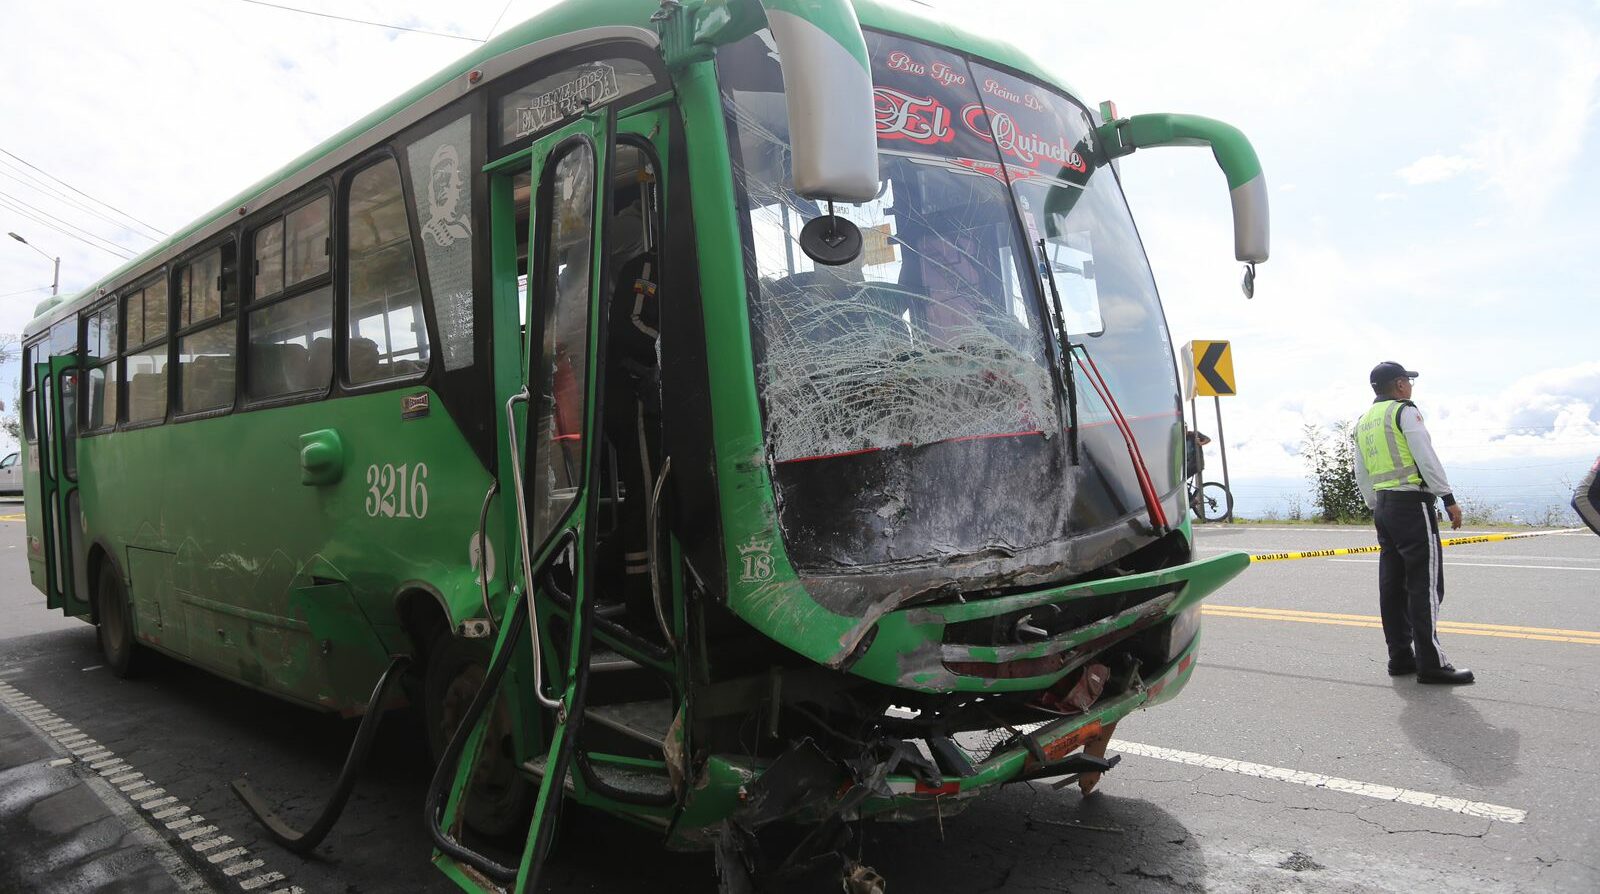 El conductor del bus huyó, luego del siniestro de tránsito que dejó dos fallecidos en Quito. Foto: Julio Estrella/ EL COMERCIO